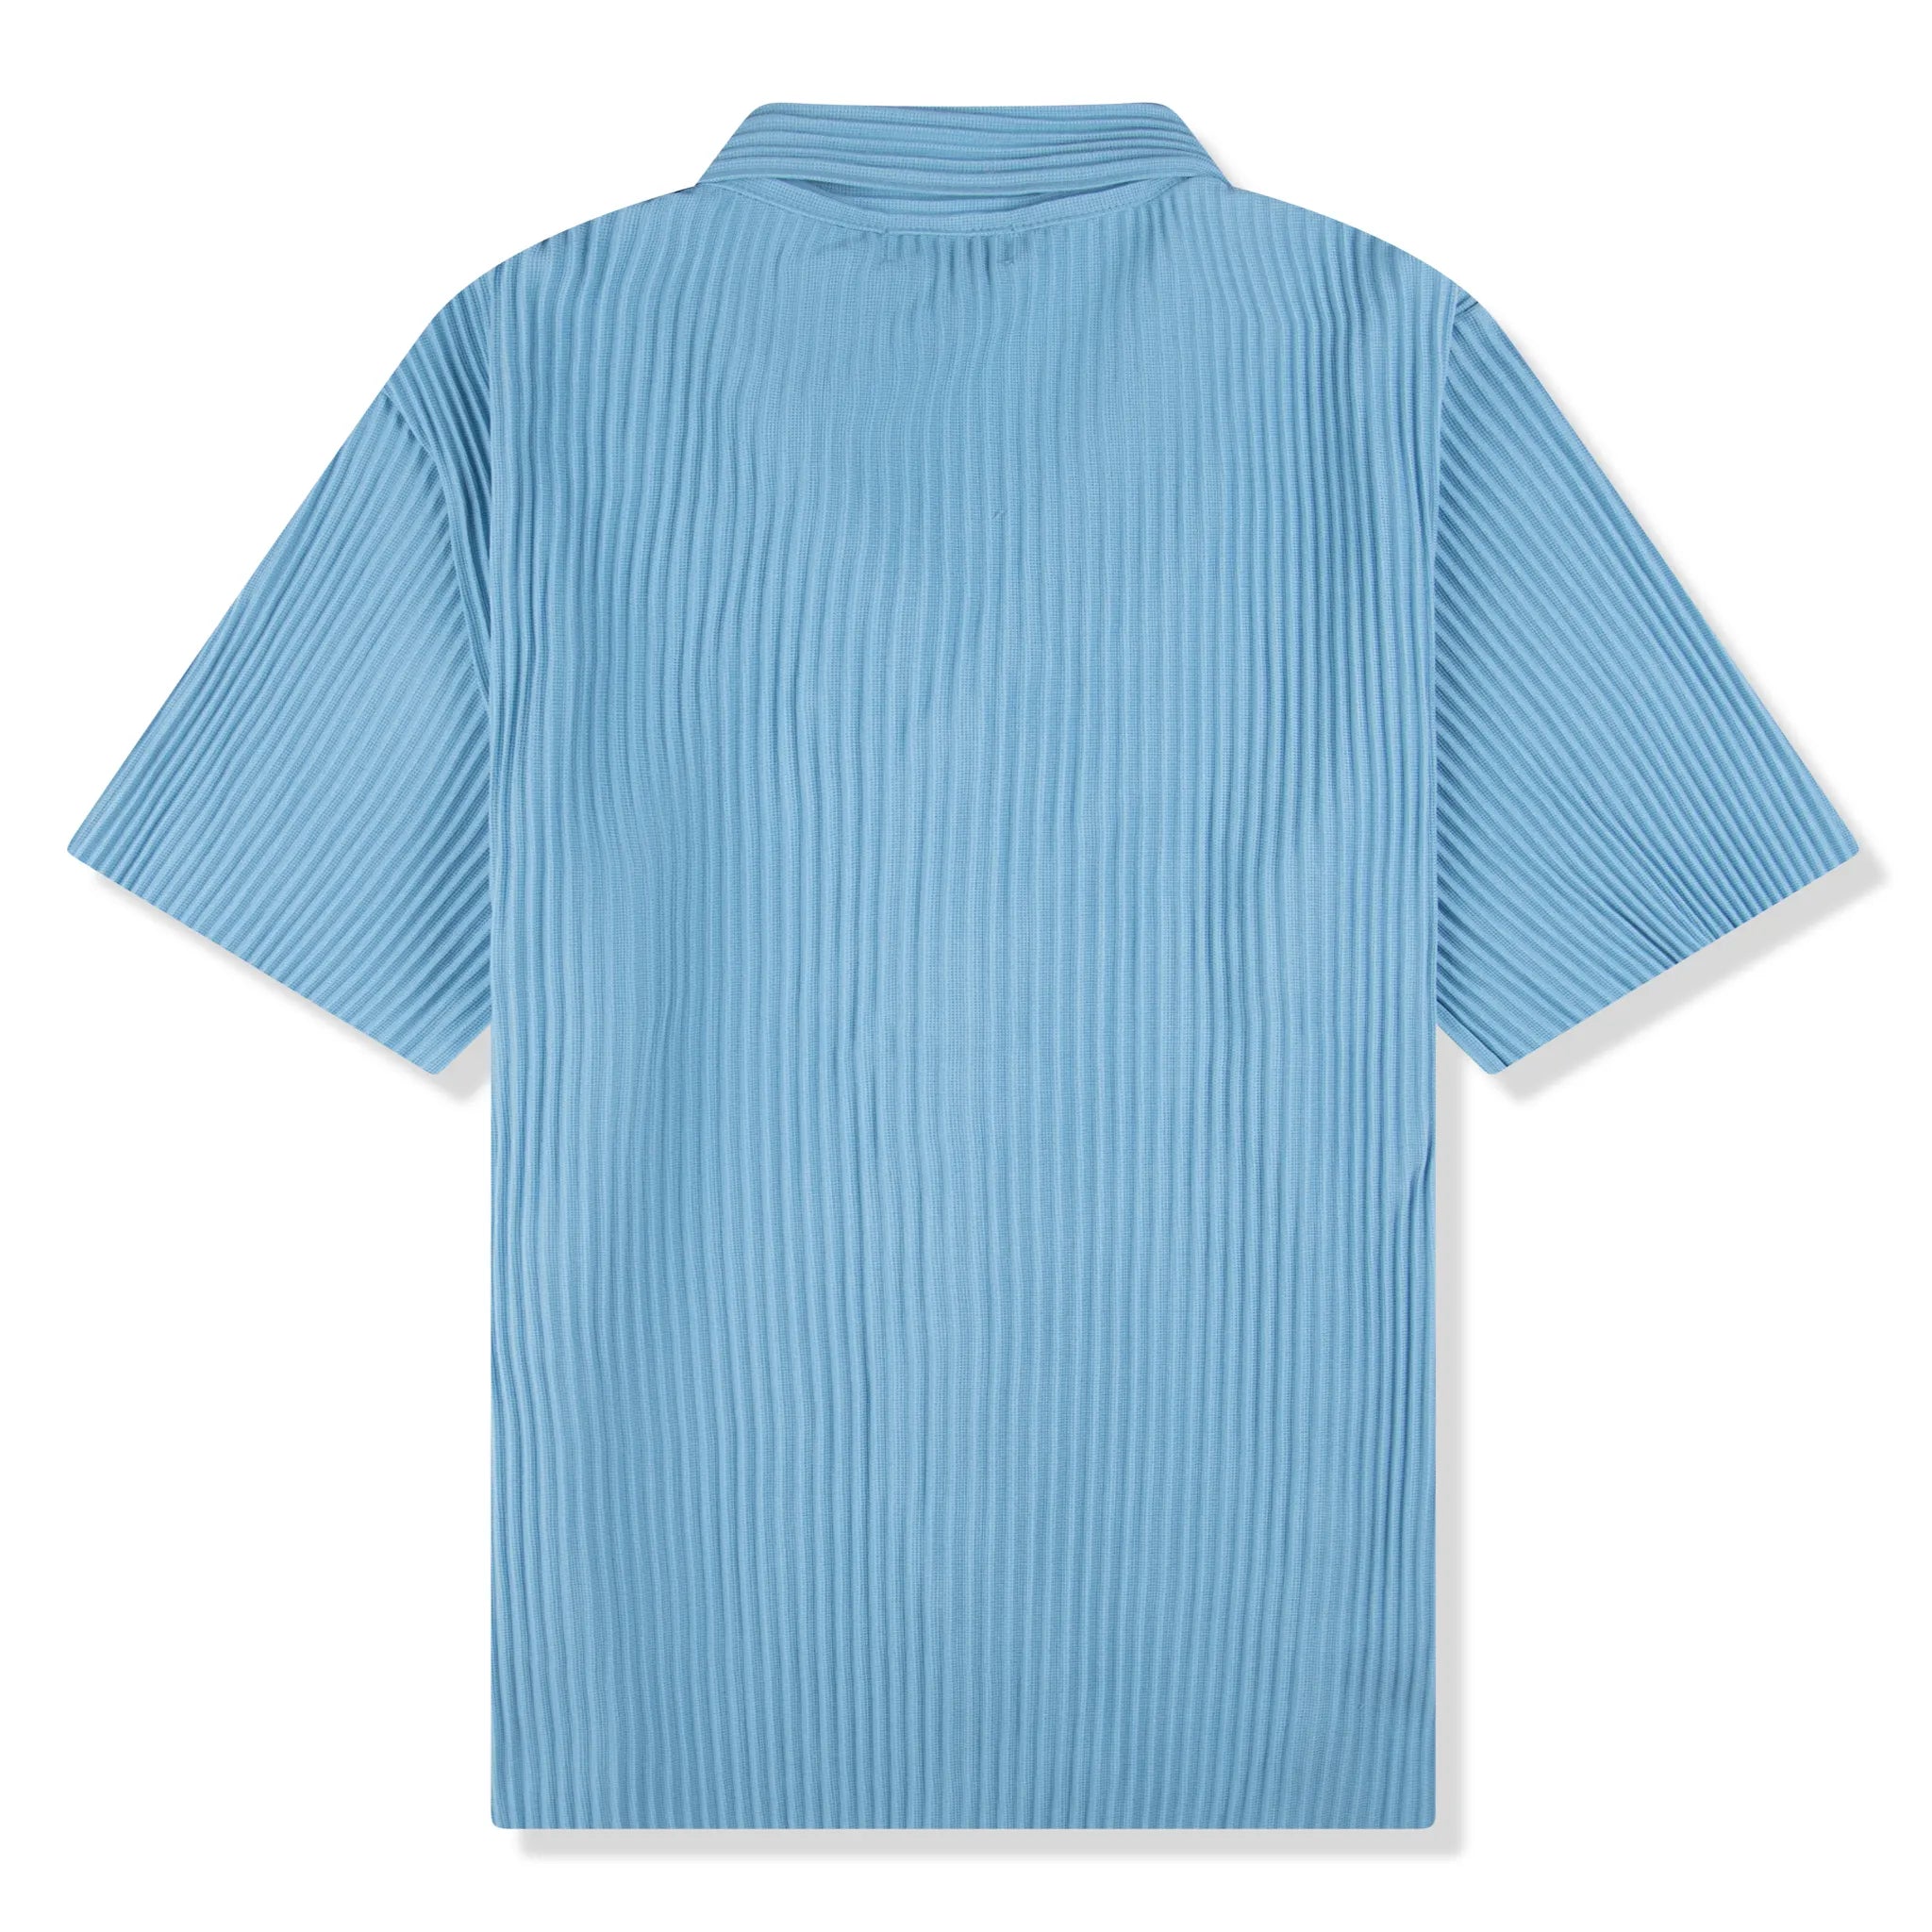 Back view of Belier Pleated Short Sleeve Light Blue Resort Shirt BM-073